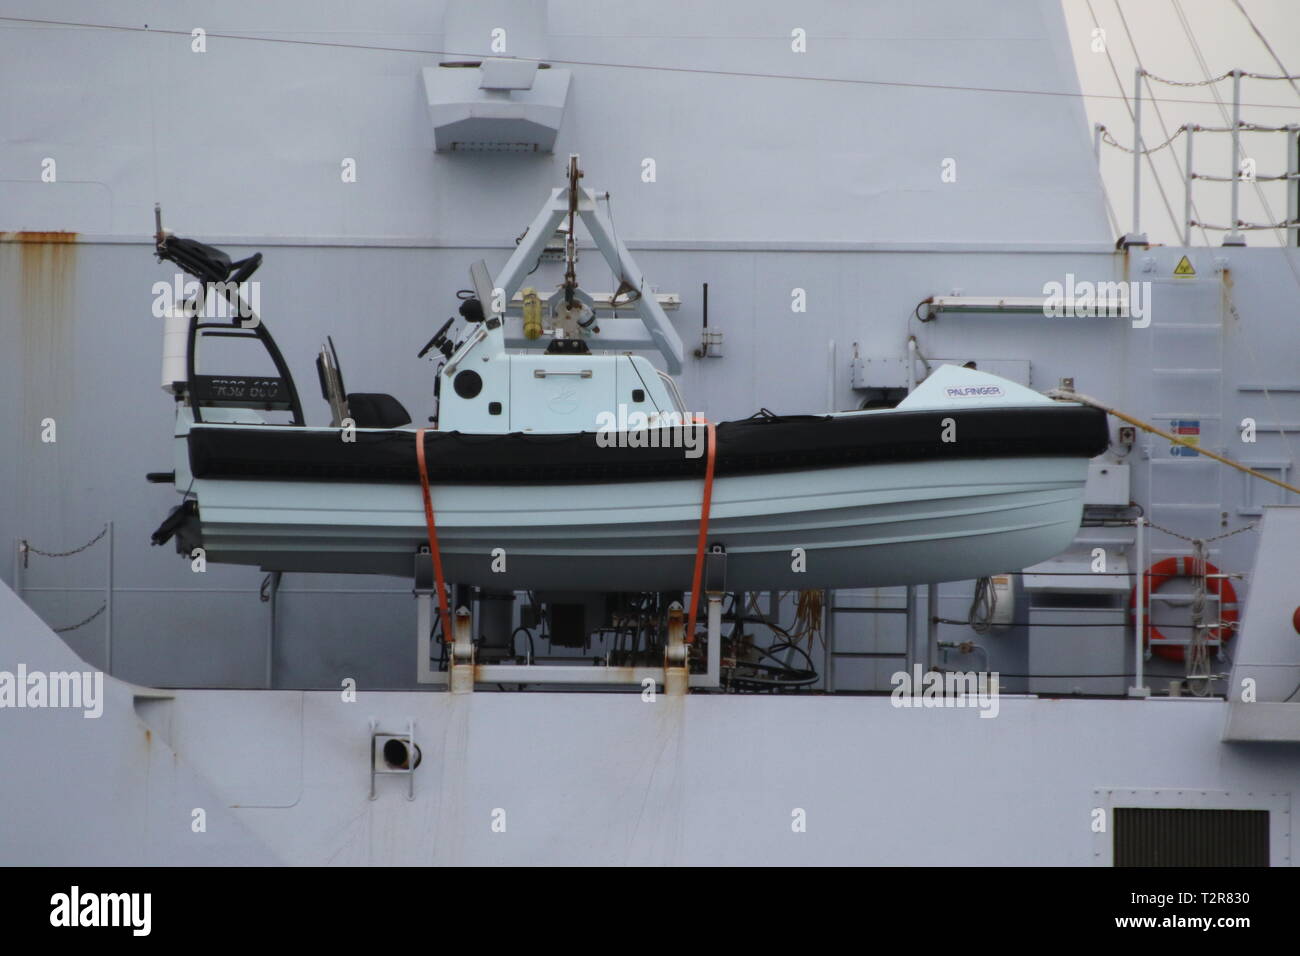 Un Palfinger FRSQ 600 bateaux de sauvetage à bord HNLMS Frise (P842), un patrouilleur classe Holland-navire exploité par la Marine royale néerlandaise. Banque D'Images